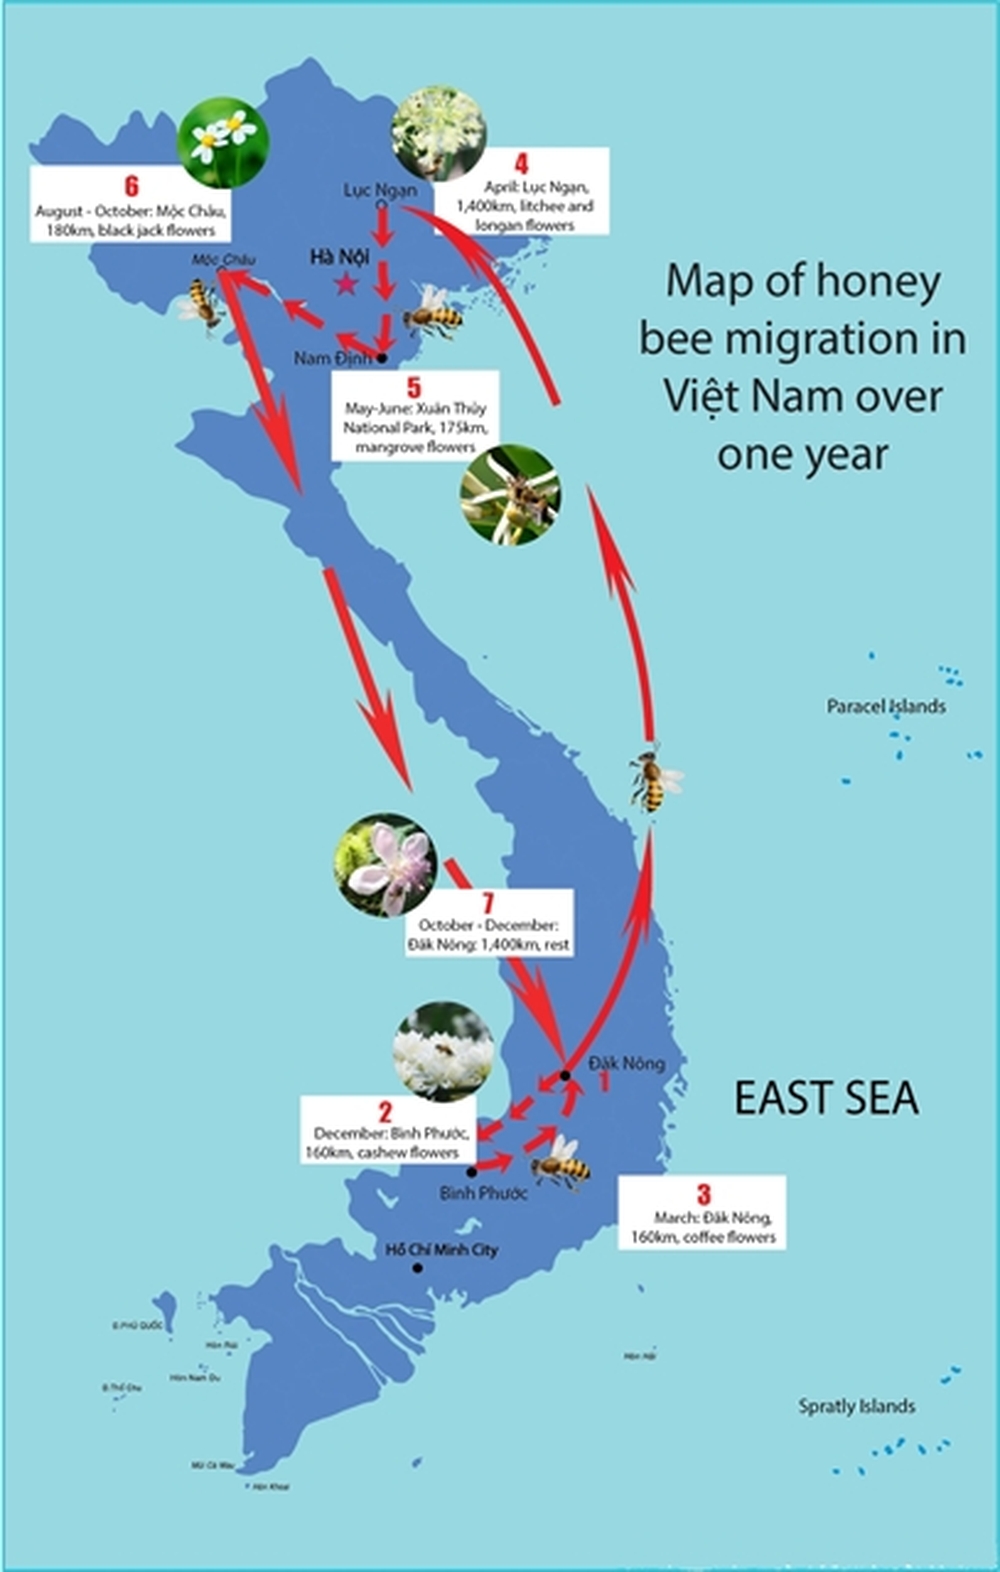 Пчеловодство Вьетнама до недавнего времени стабильно развивалось, однако в 2021 году столкнулось со значительными трудностями из-за введения США антидемпинговых пошлин на вьетнамский мед.